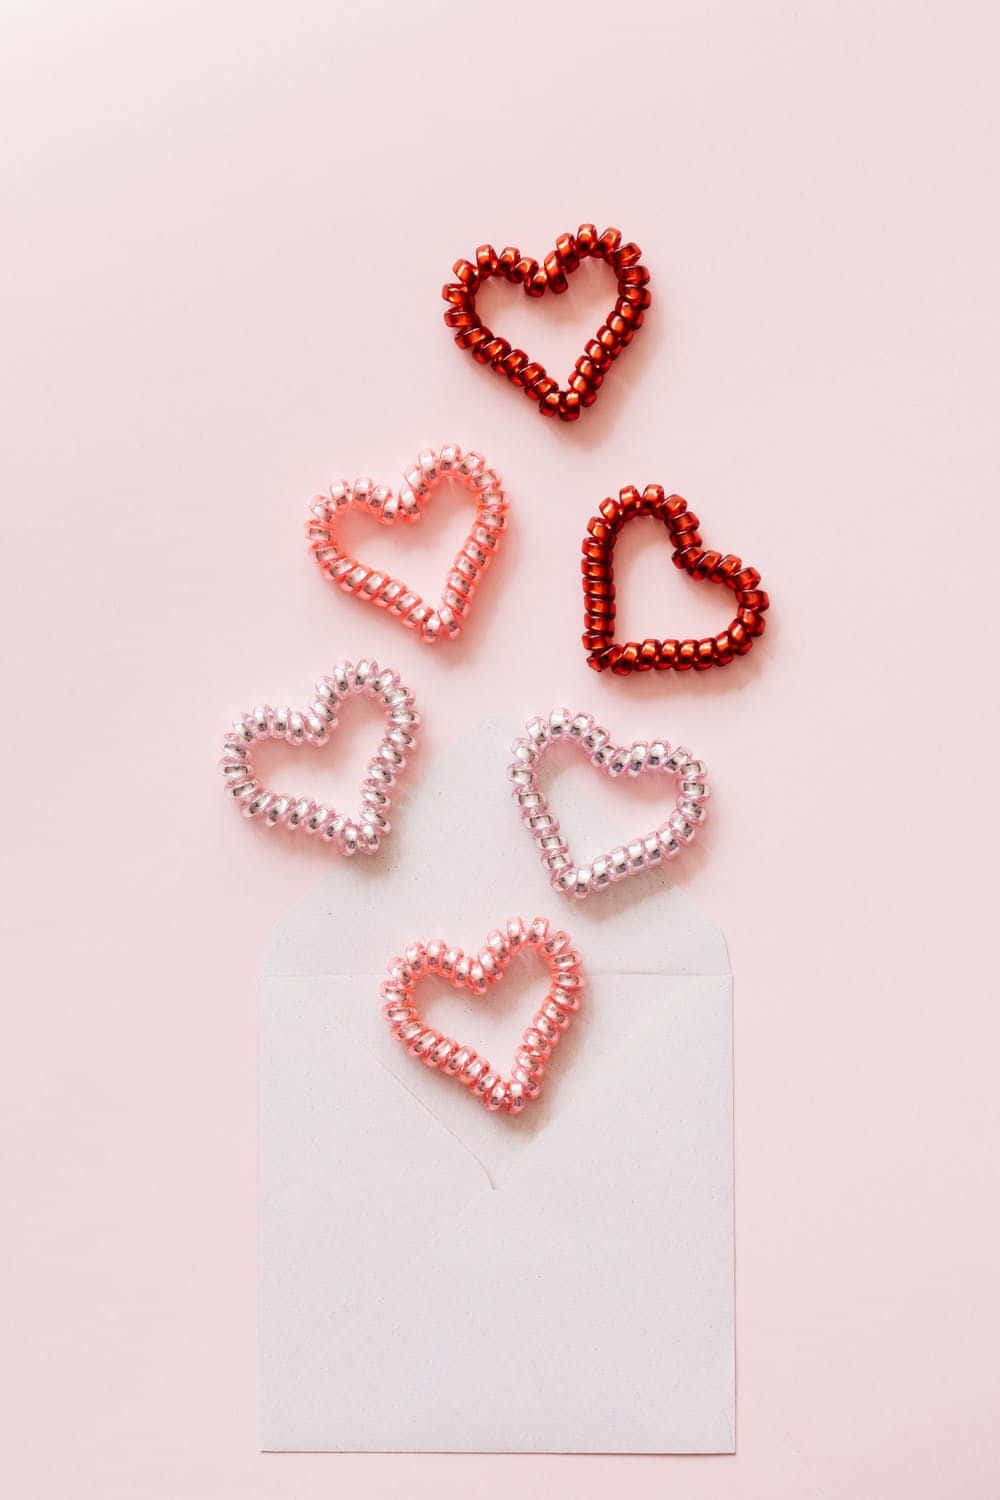 Laçosde Corações Em Formato De Coração Multicolorido E Fofo Para O Dia Dos Namorados. Papel de Parede